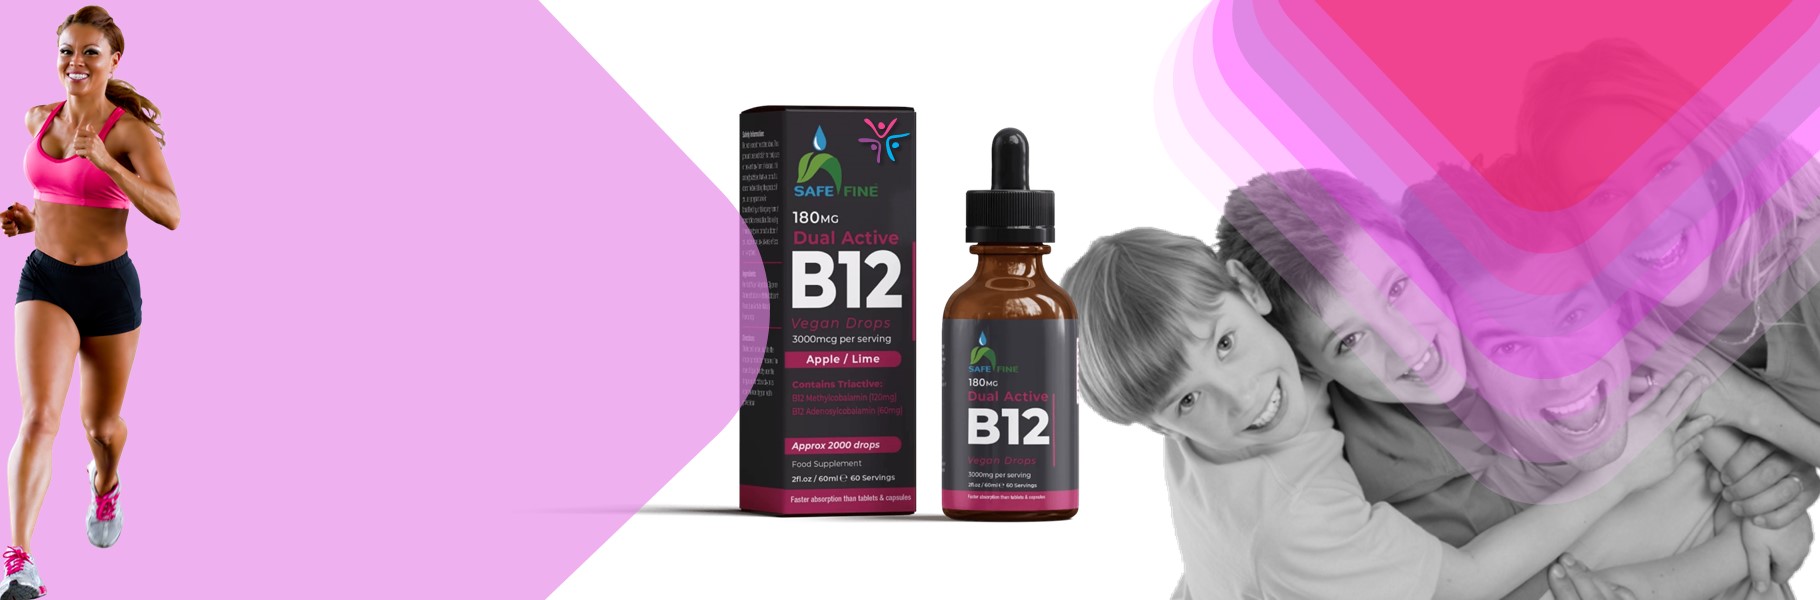 The Key to a Fit Life: Vitamin B12 Liquid Drops!